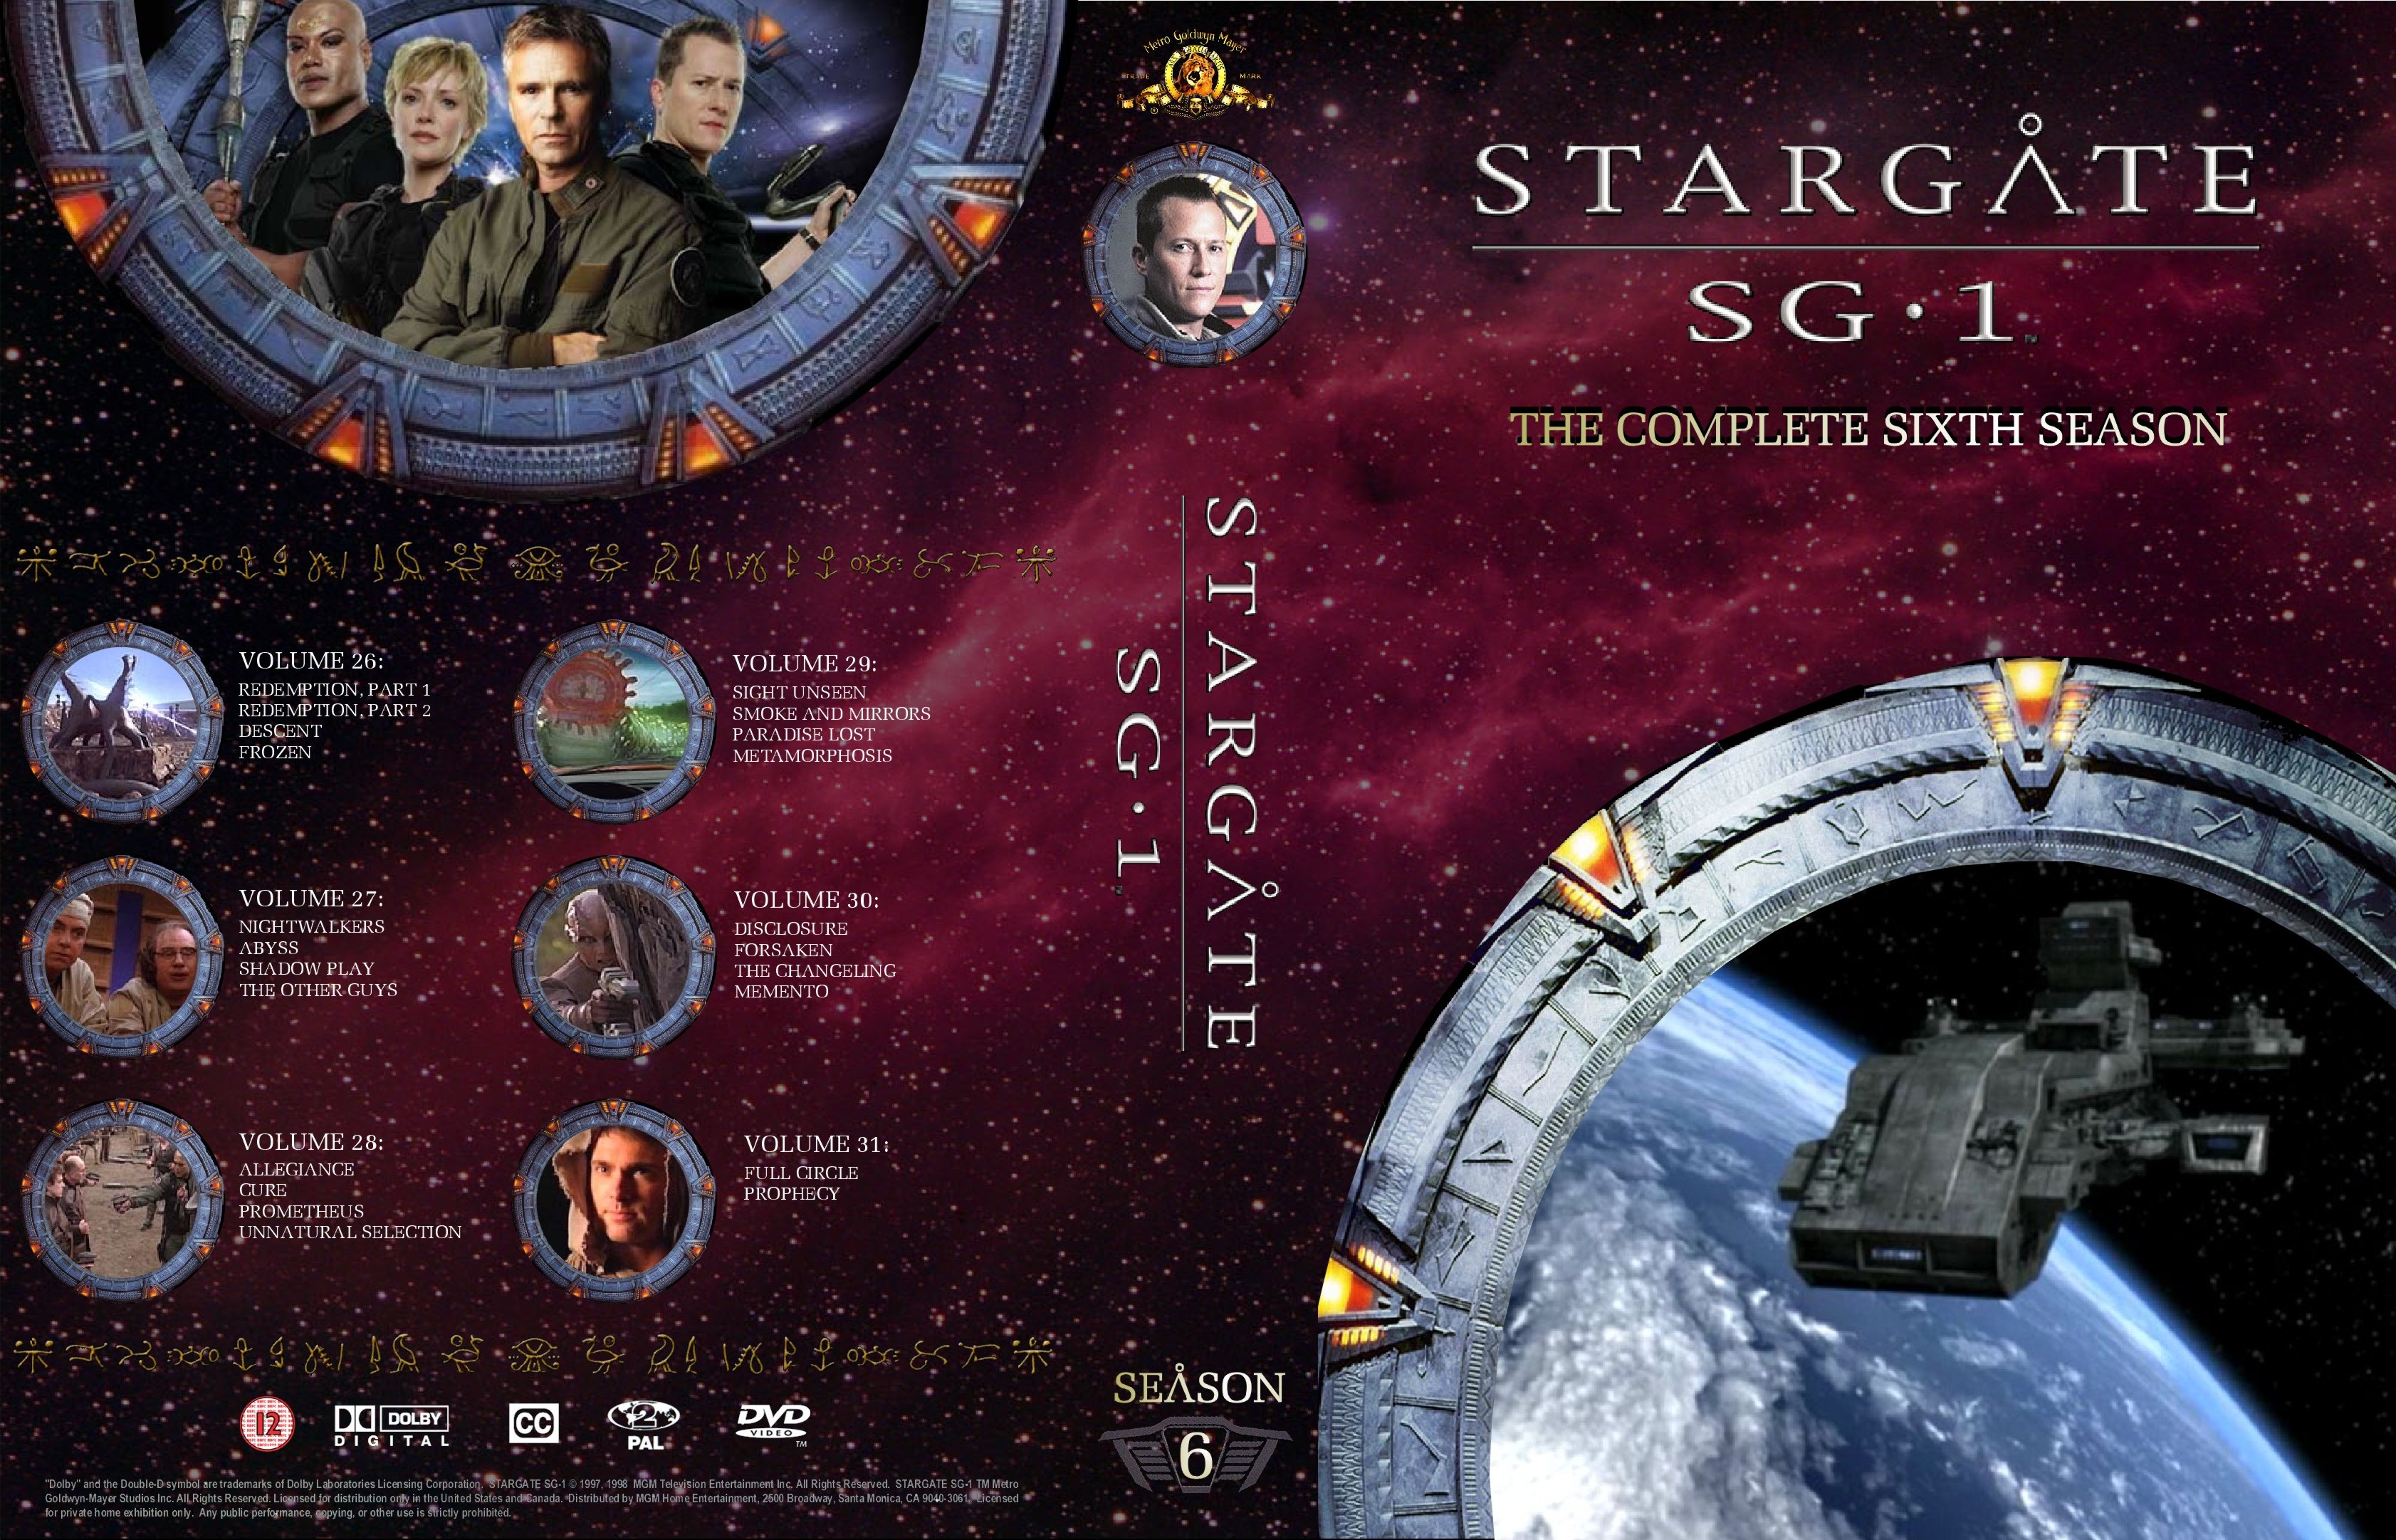 Карелин покоритель звездных врат читать. Звёздные врата: SG-1 200. Звездные врата 1994 Постер. Звёздные врата зв1 второстепенные персонажи.